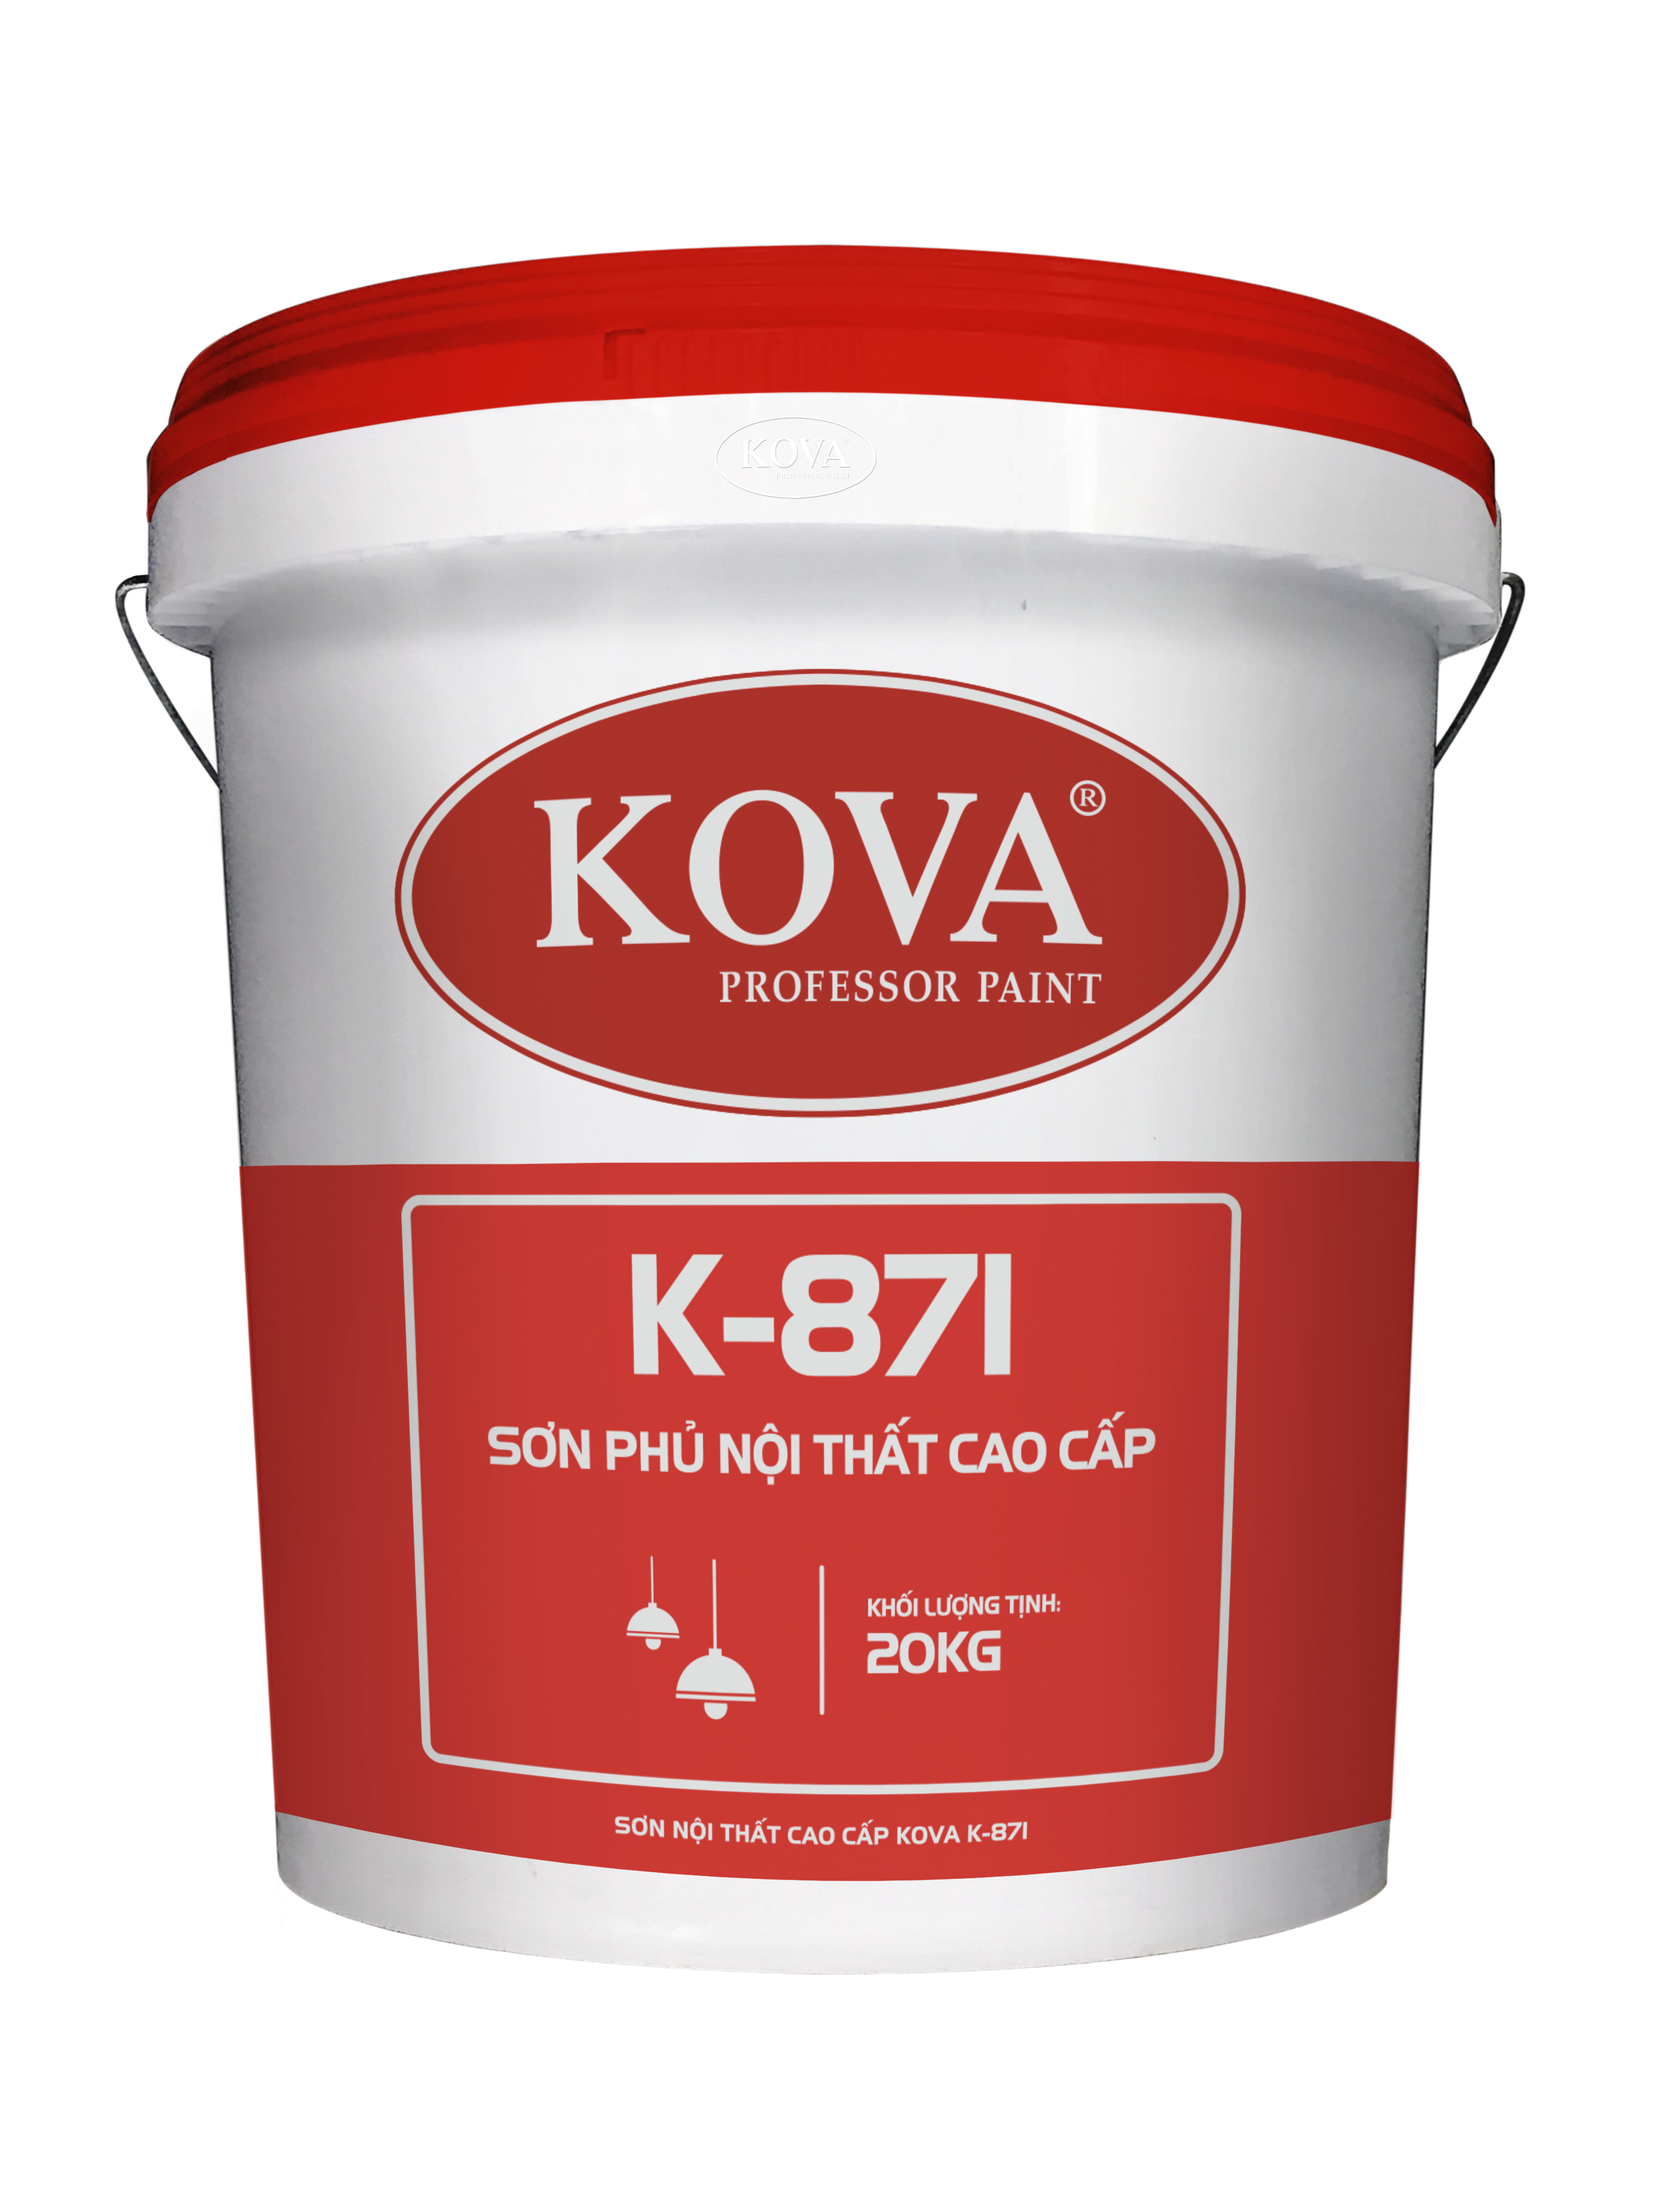 Tận hưởng sự đẳng cấp và chất lượng hàng đầu với sơn nội thất cao cấp Kova K